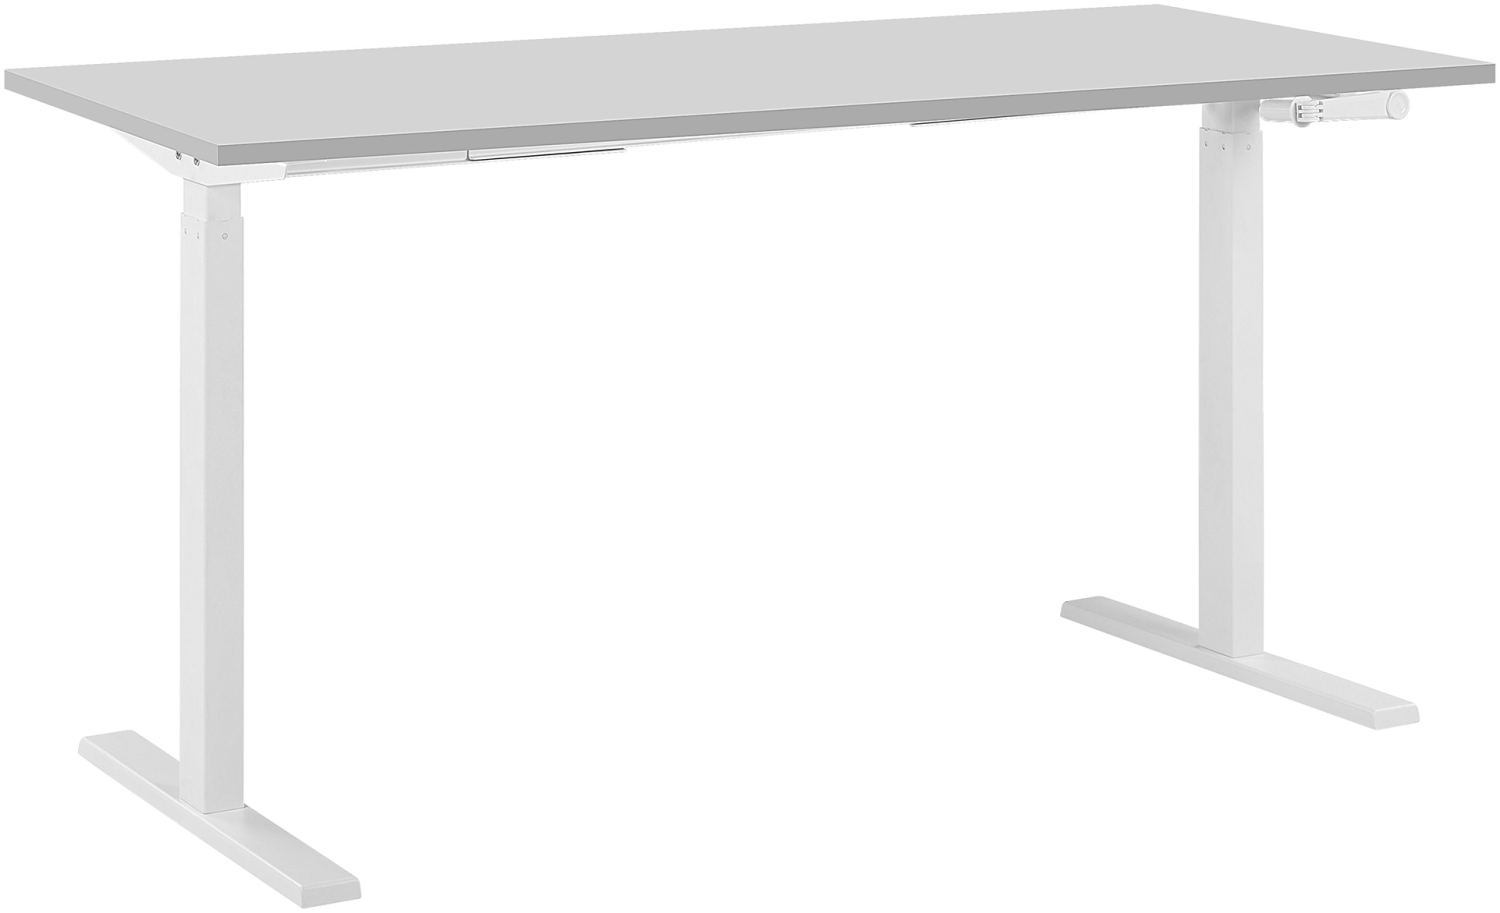 Schreibtisch manuell höhenverstellbar, Spanplatte Grau/ Weiß,76-116 x 130 x 72 cm Bild 1